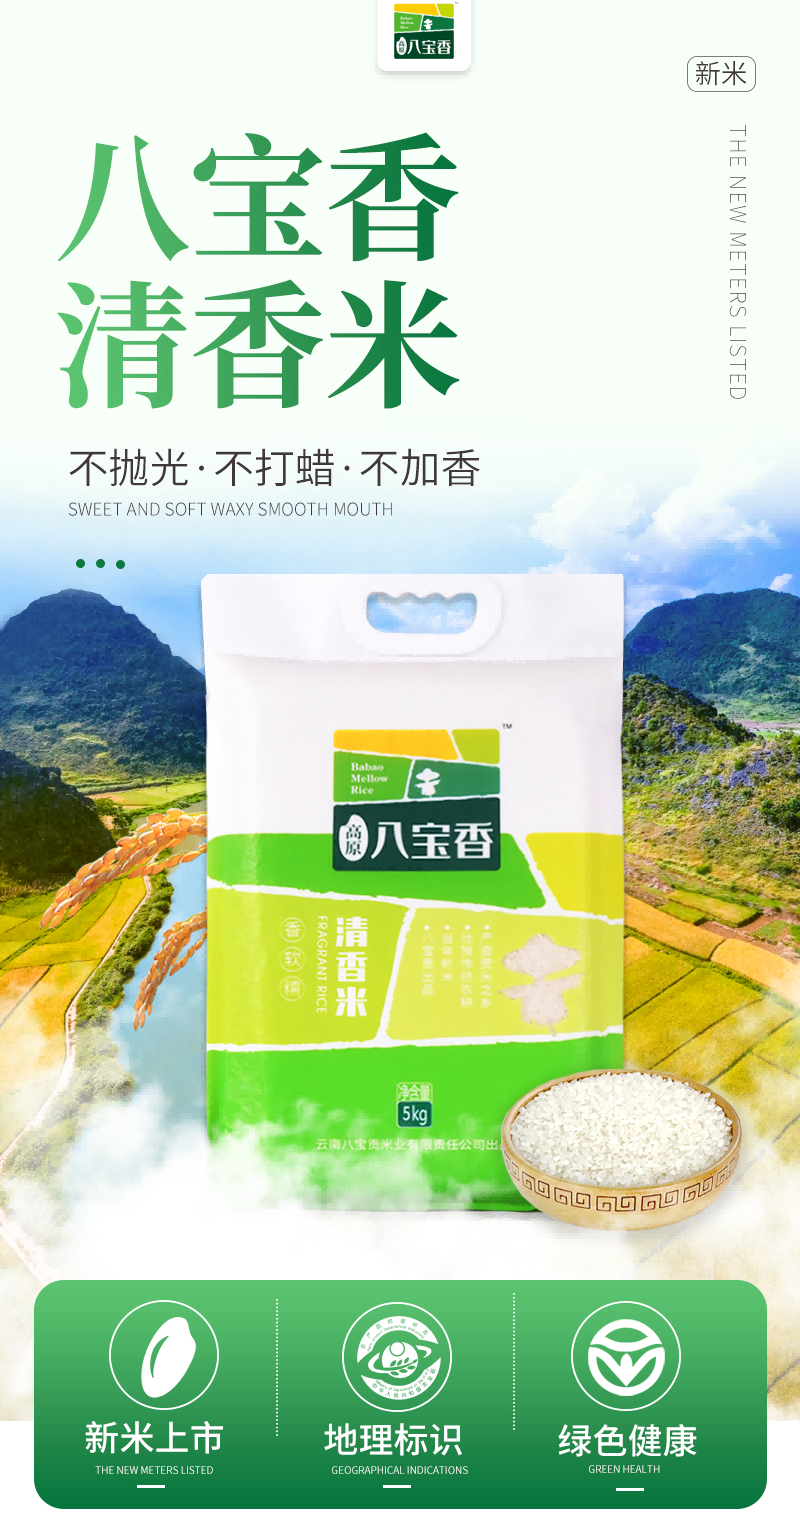 高原八宝香 云南大米清香米5kg一季稻新米真空包装